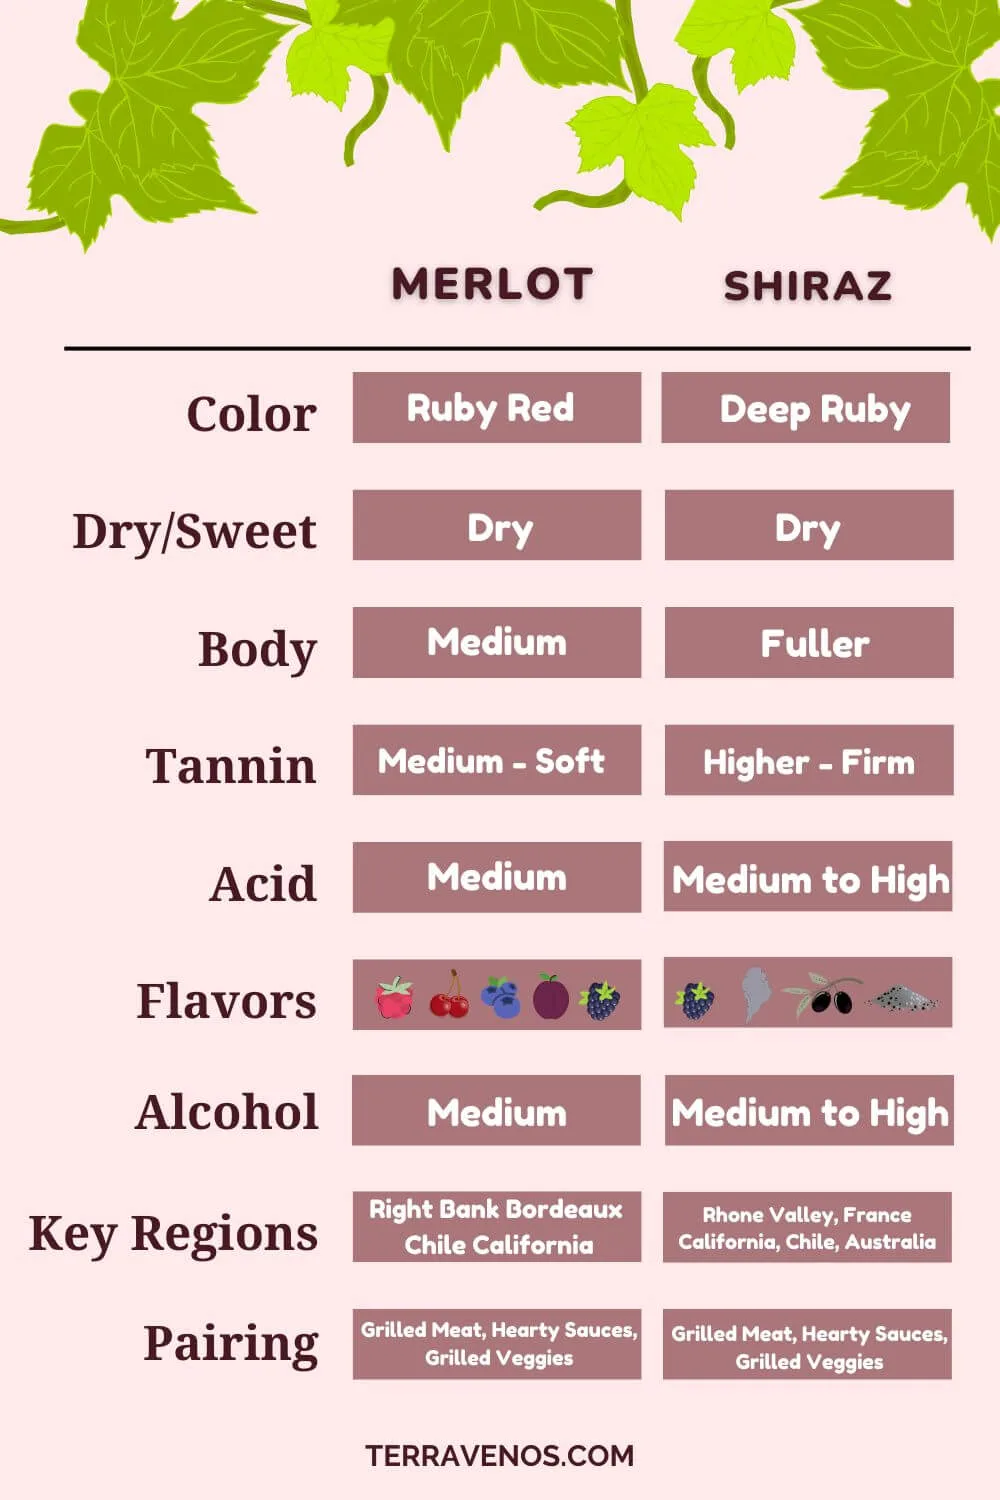 Shiraz-vs-merlot-infographic-comaparison